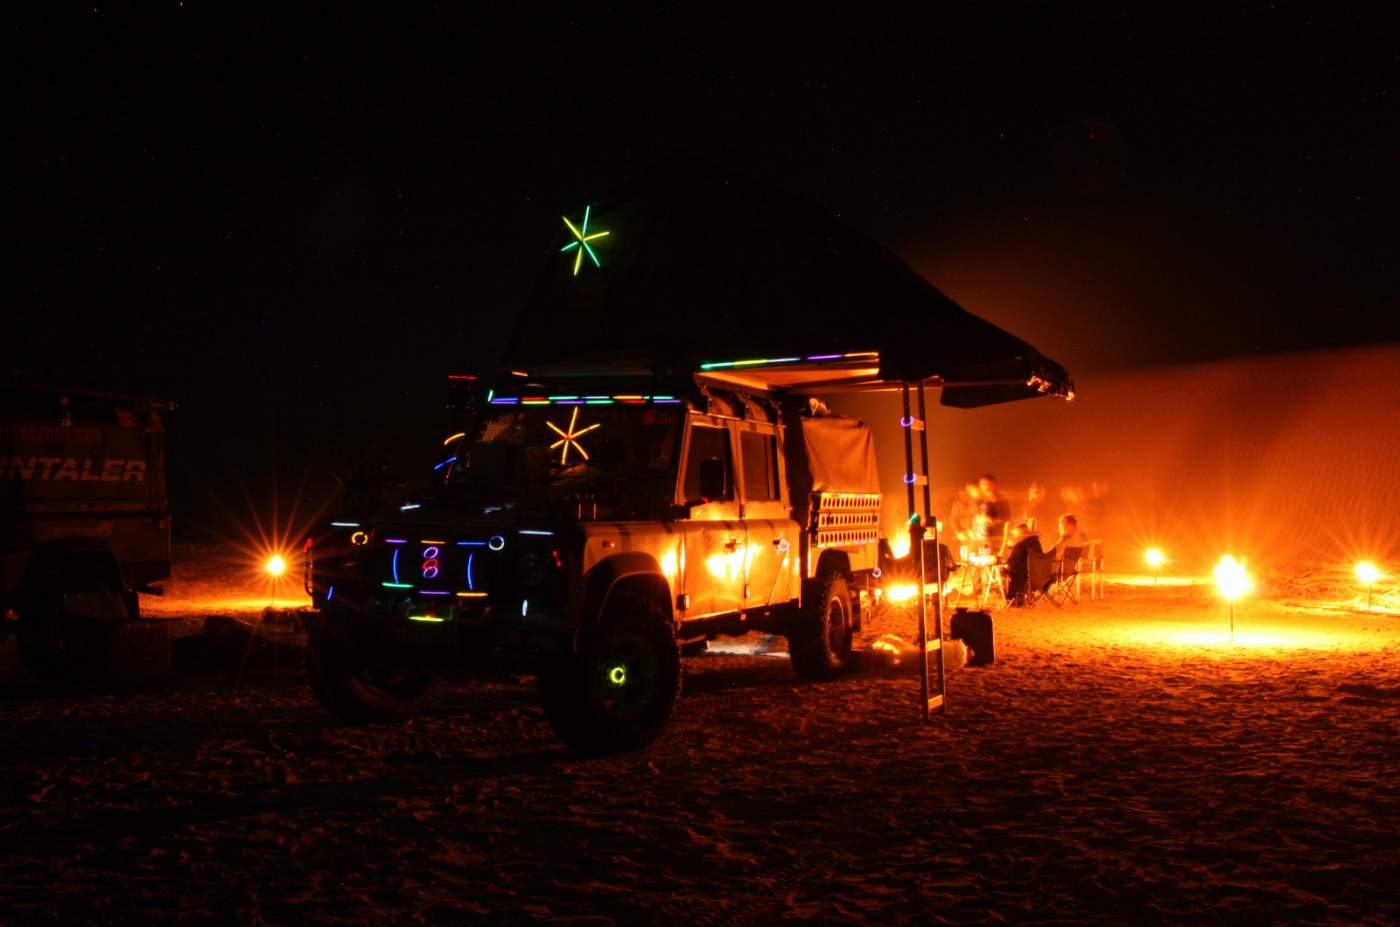 Mit Knicklichtern geschmückter Geländewagen als Weihnachtsbaum am Lagerfeuer